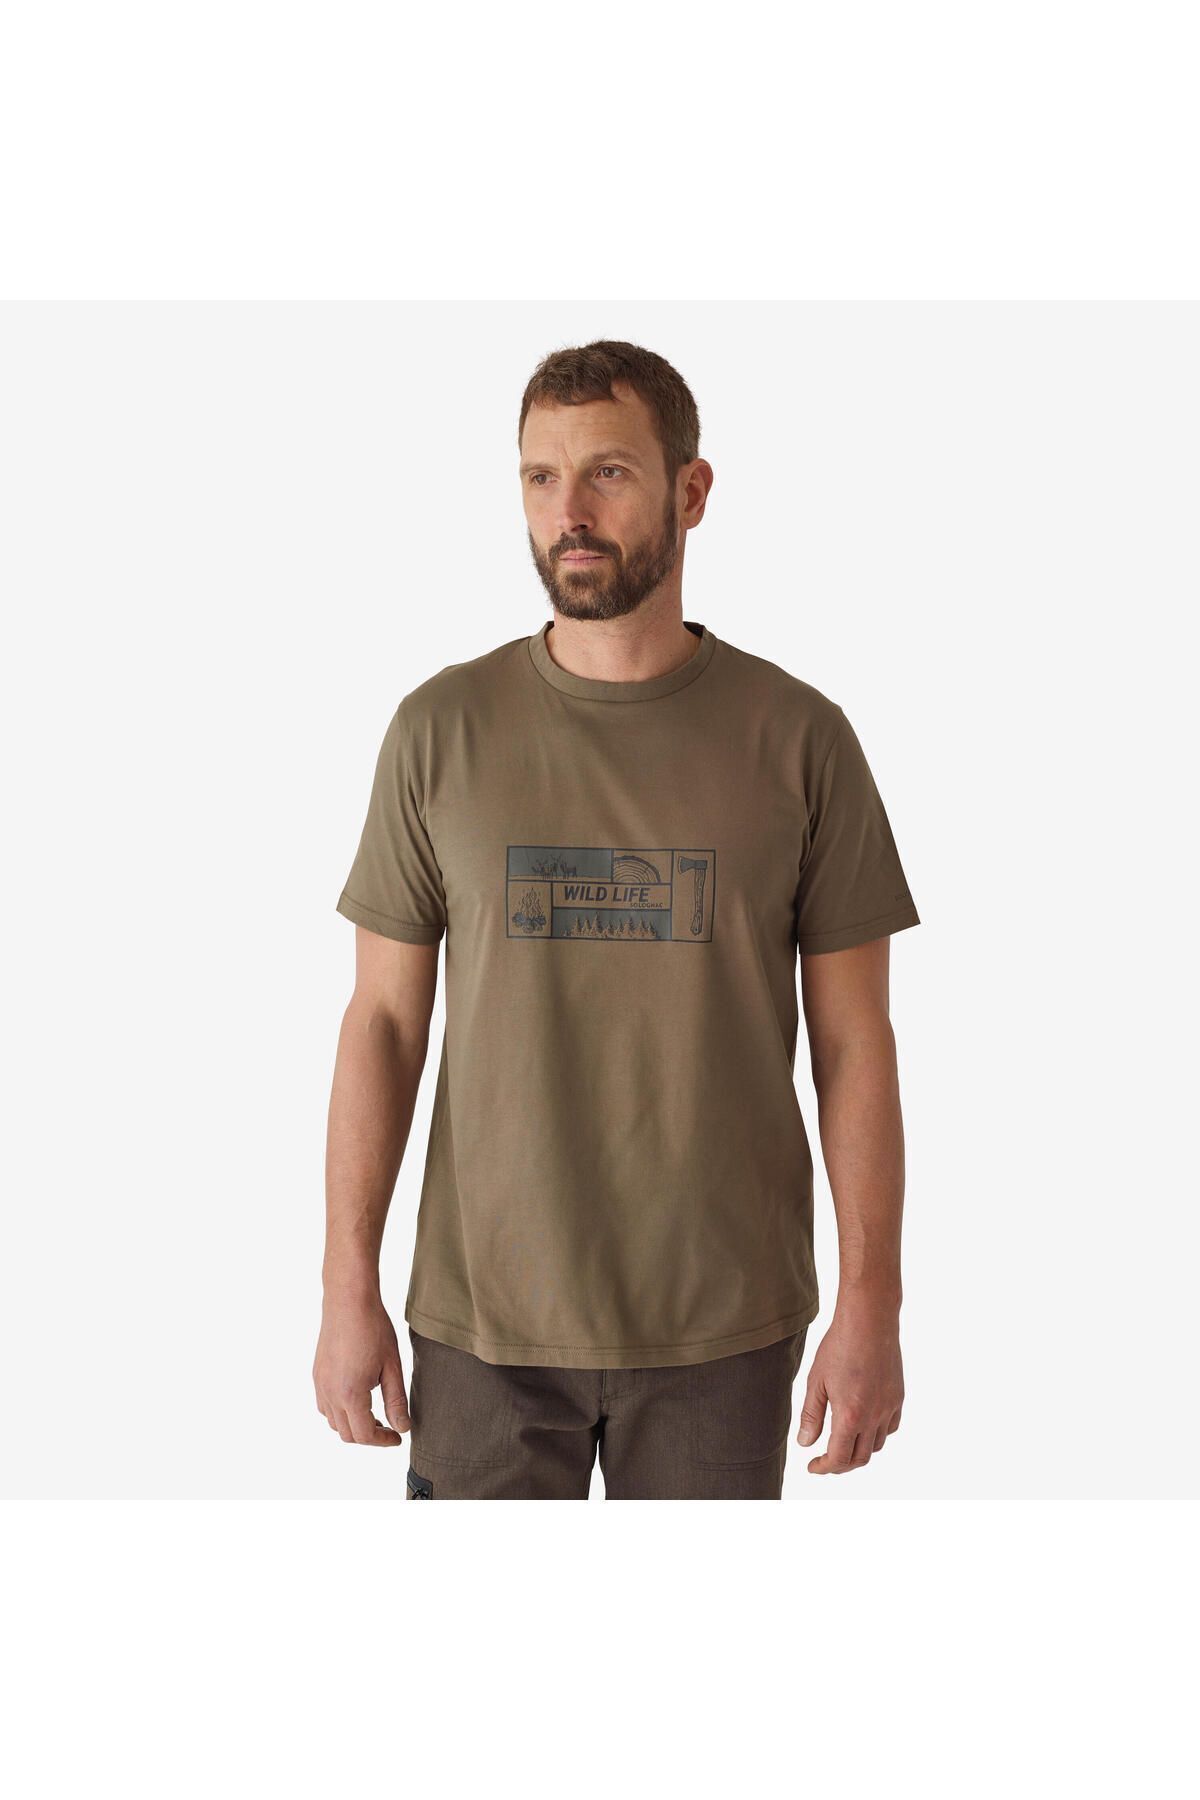 Decathlon Erkek Kısa Kollu Baskılı Tişört - Avcılık ve Doğa Gözlemi - 100